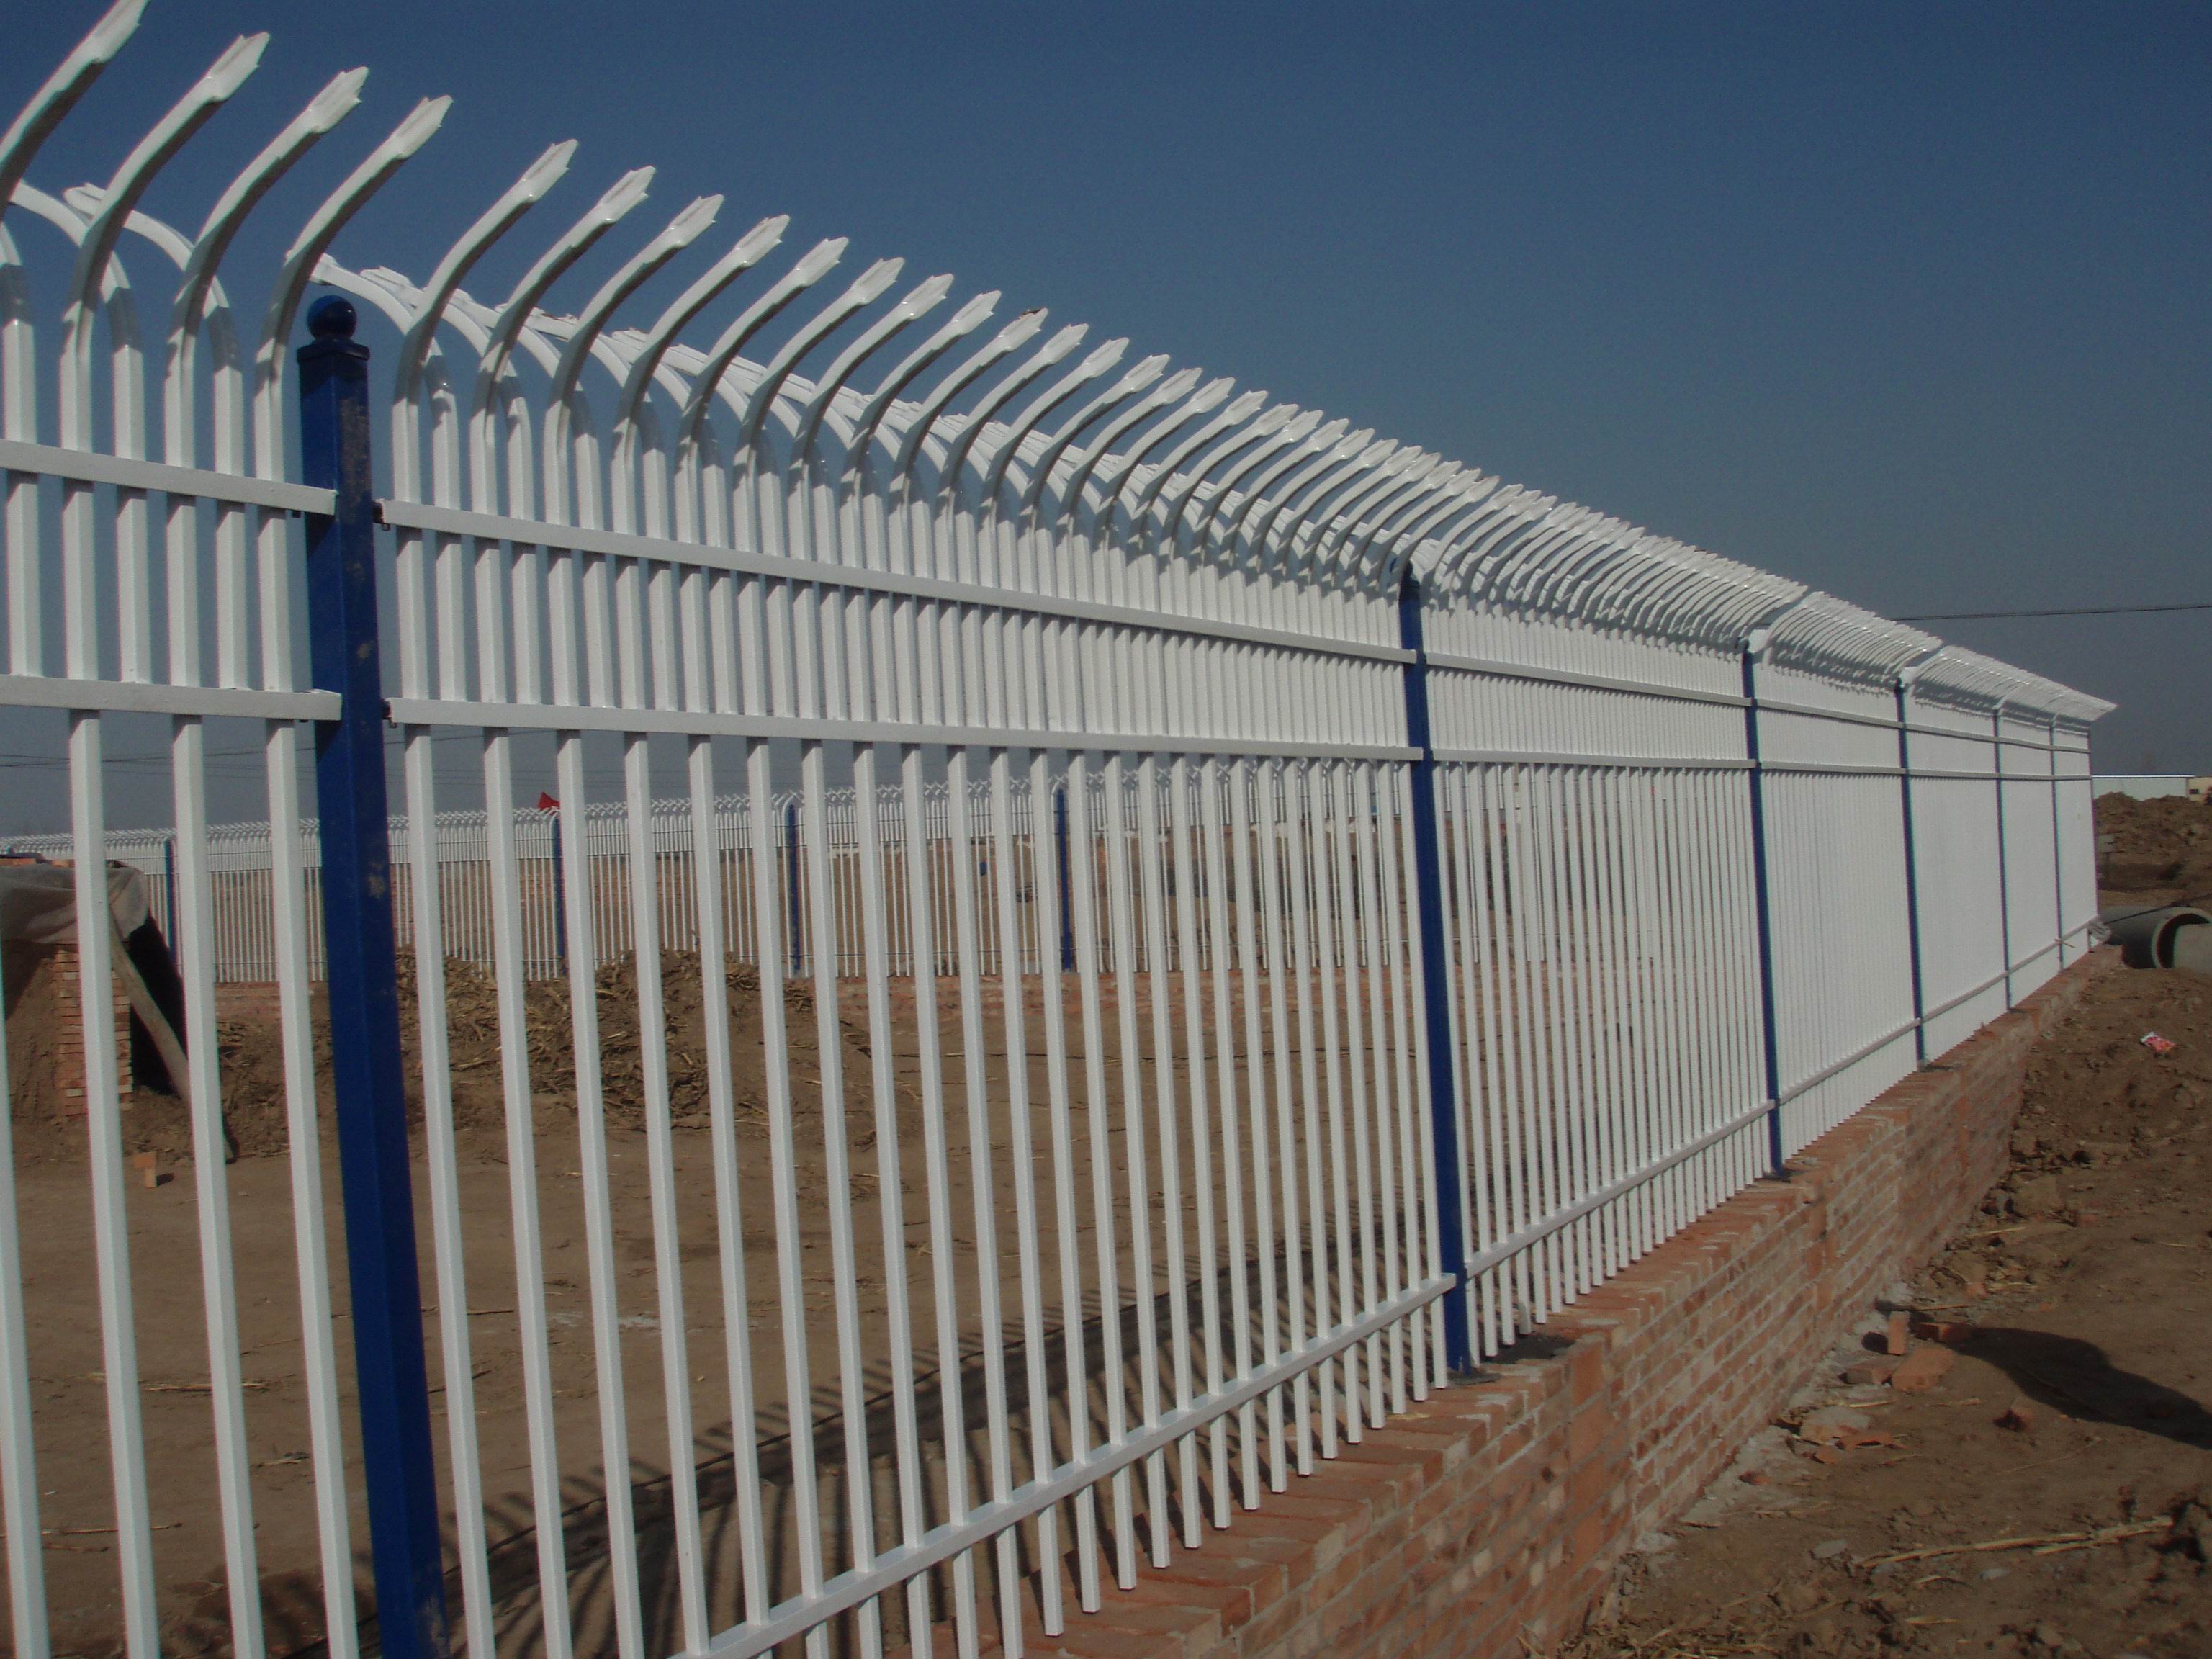 锌钢护栏厂锌钢护栏价格锌钢护栏合金护栏铁艺护栏围栏